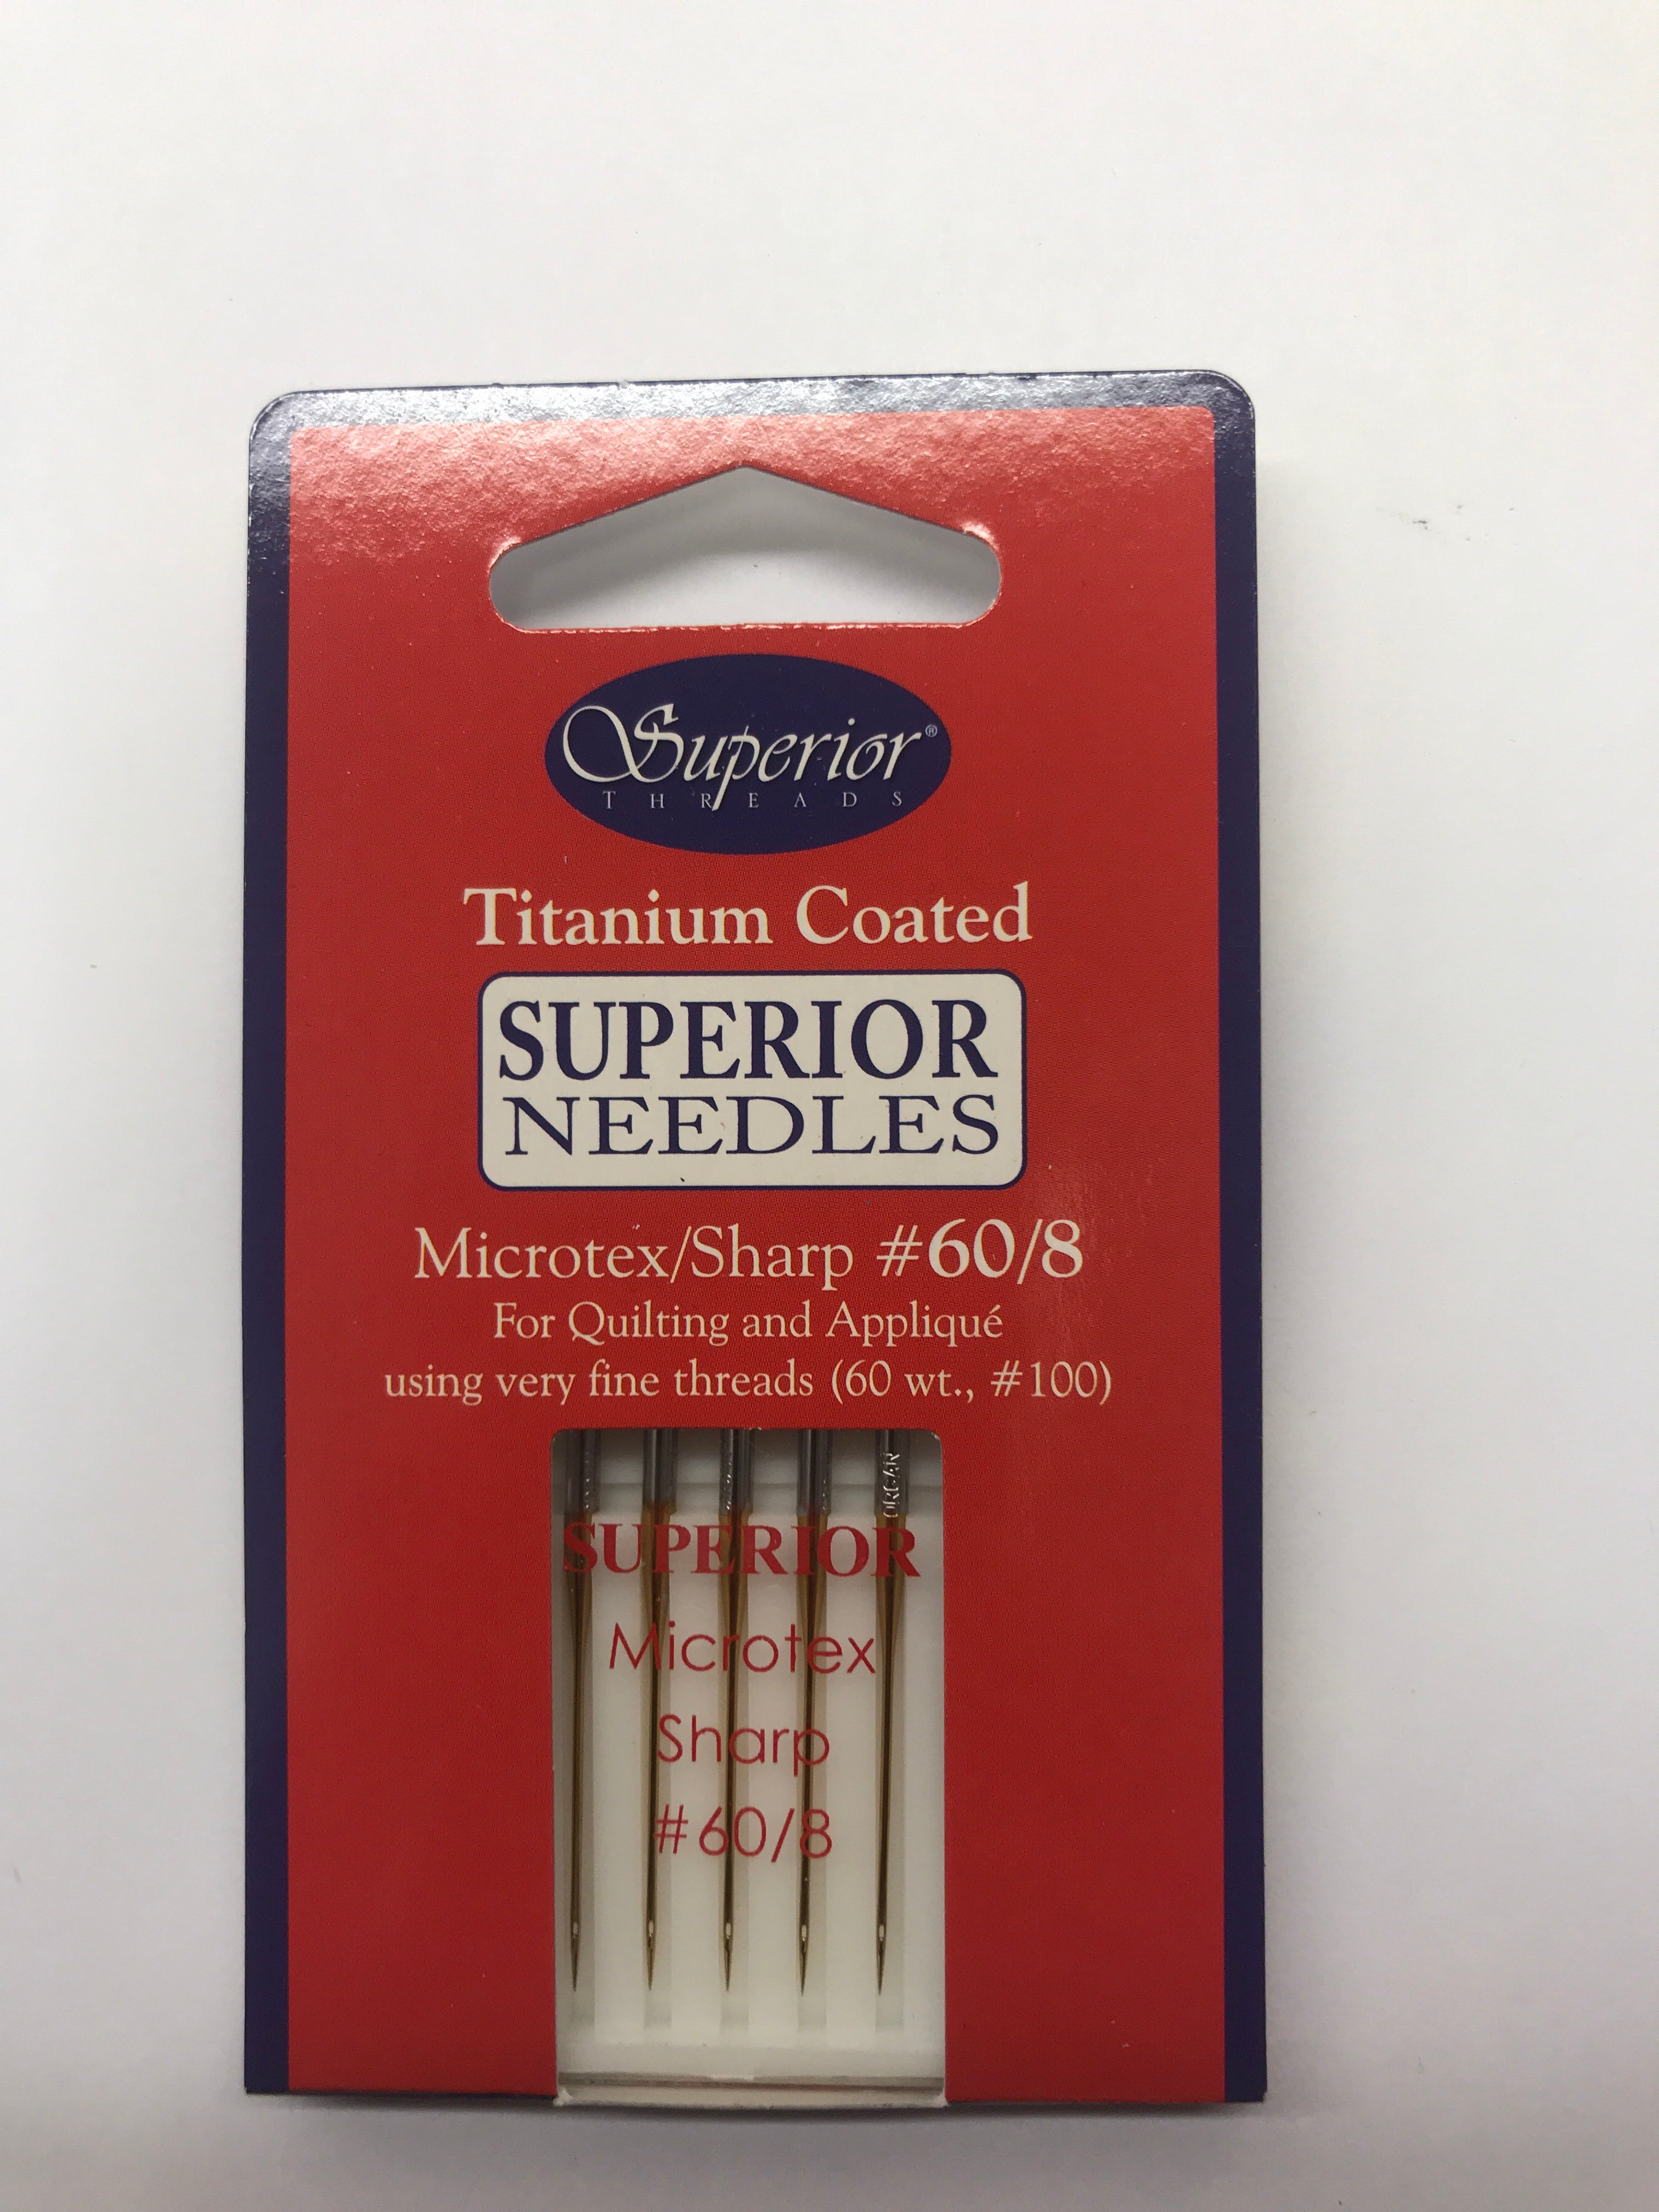 Superior Titanium Coated Microtex Machine Needles - 60/8 - (5 pack)